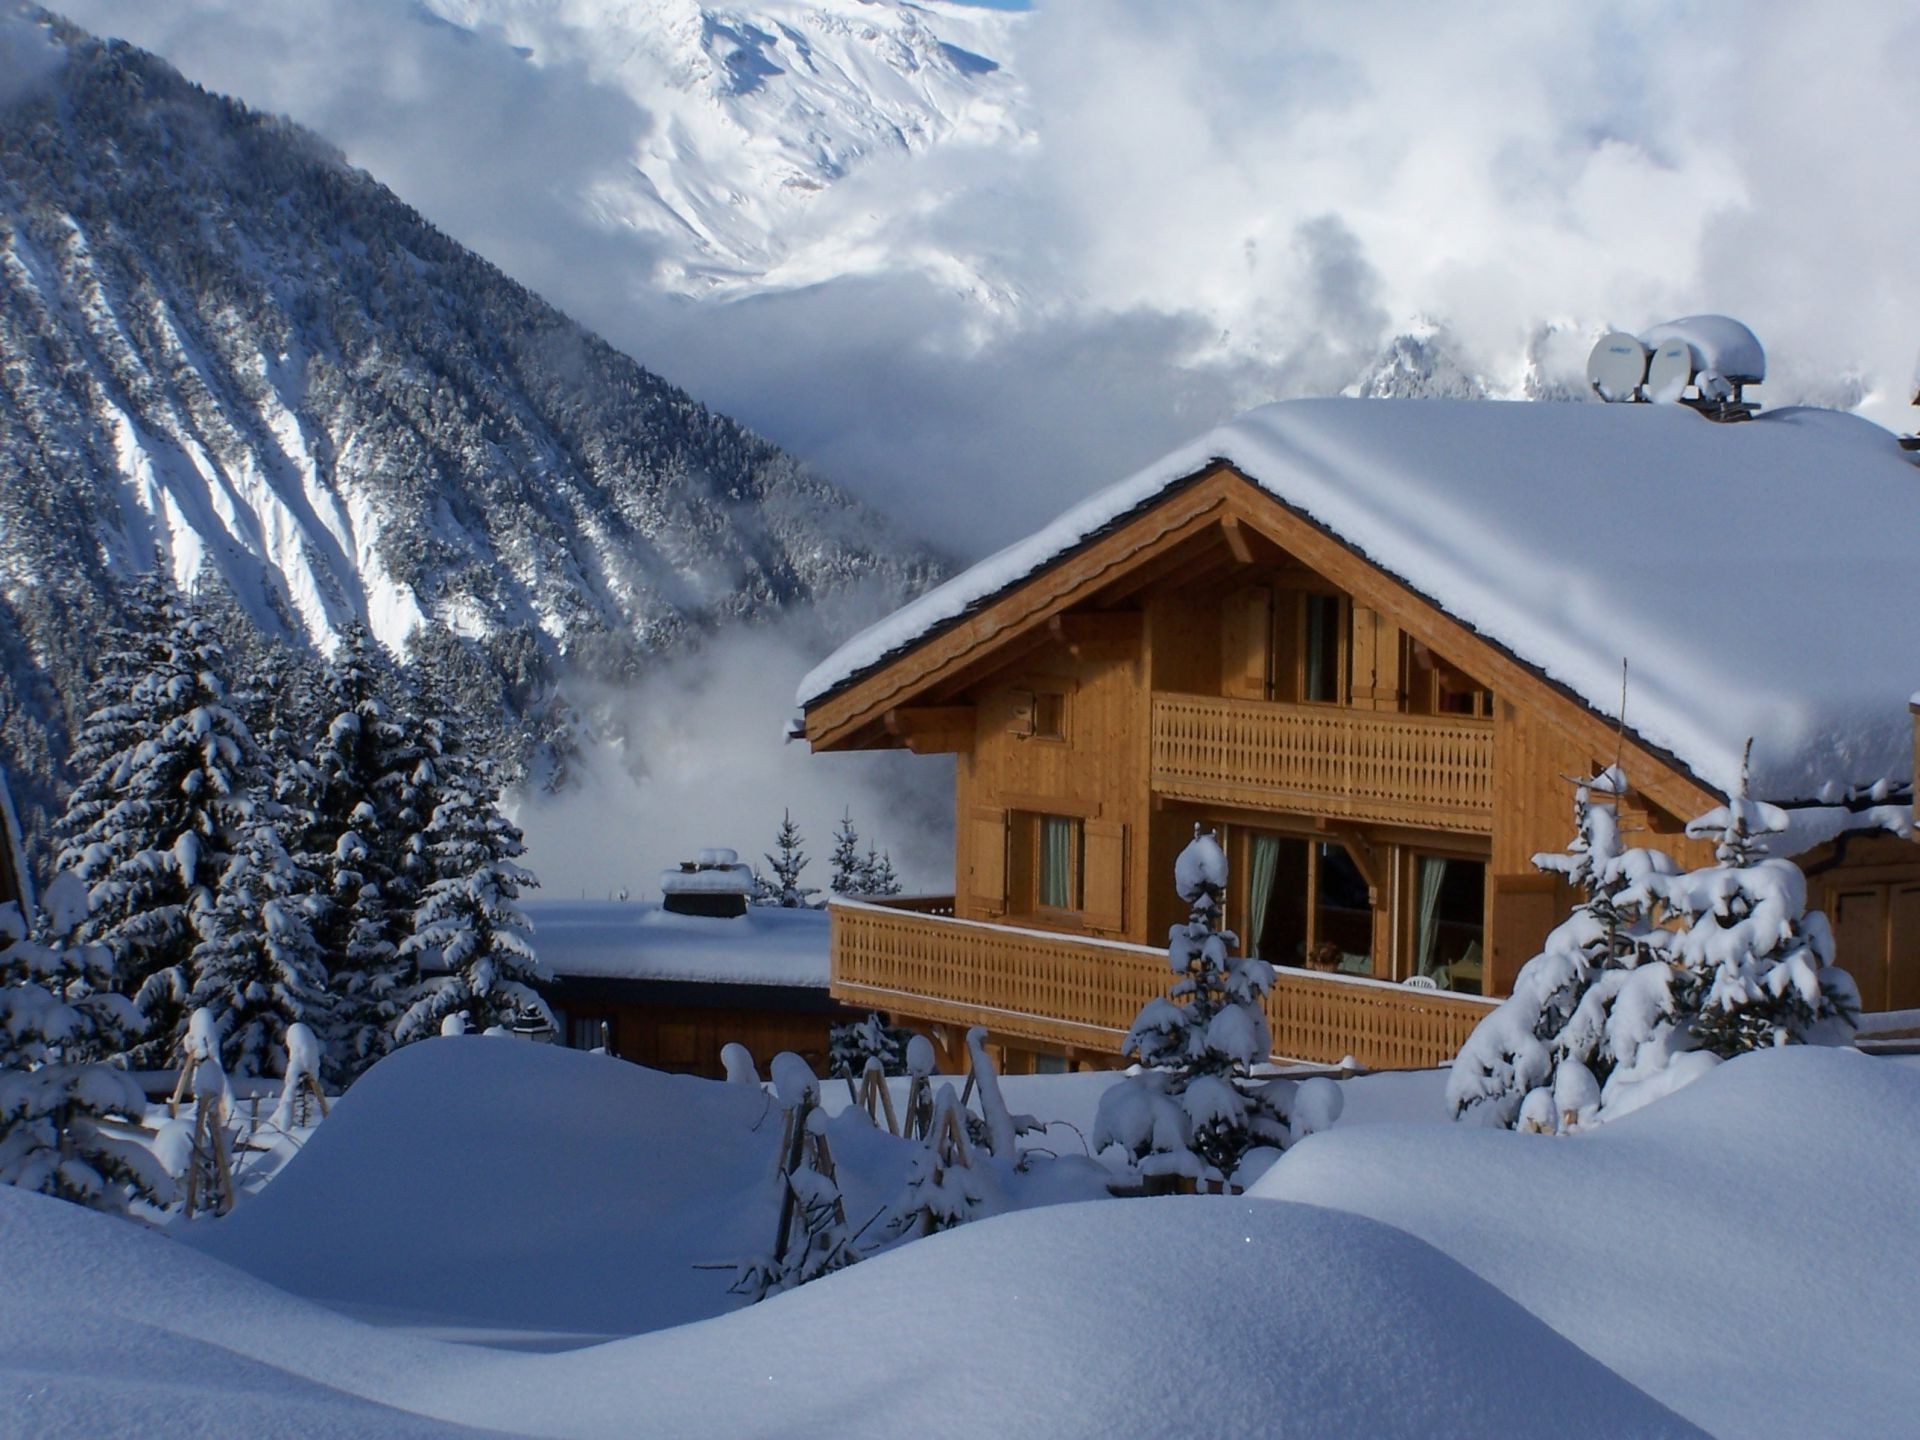 зима снег холодная шале горы замороженные курорт лед древесины мороз избушка снежное живописный сугроб погода альпийская пейзаж кабина дом